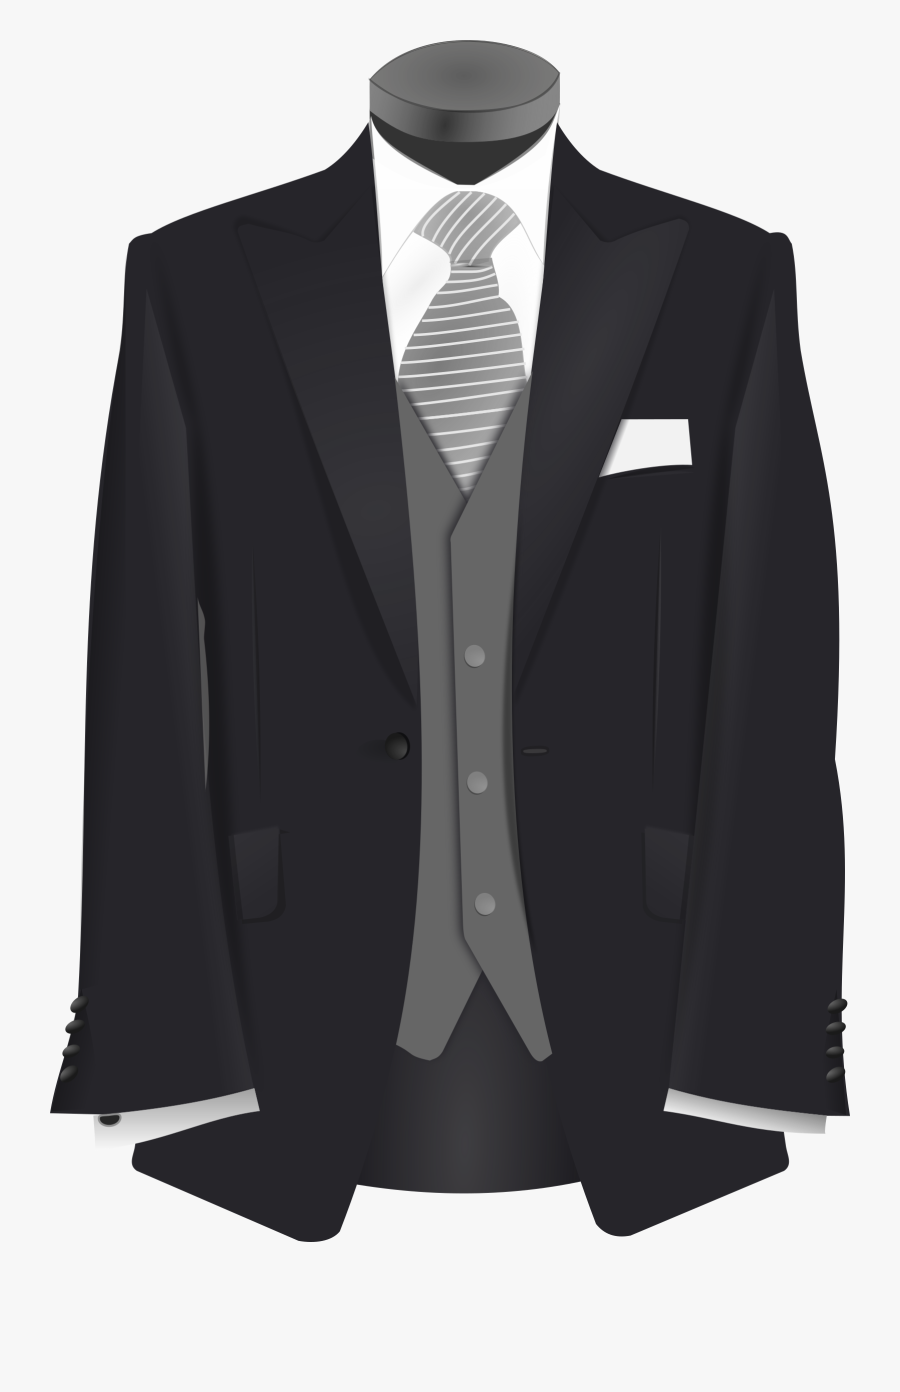 Wedding Suit - Clip Art Suit, Transparent Clipart